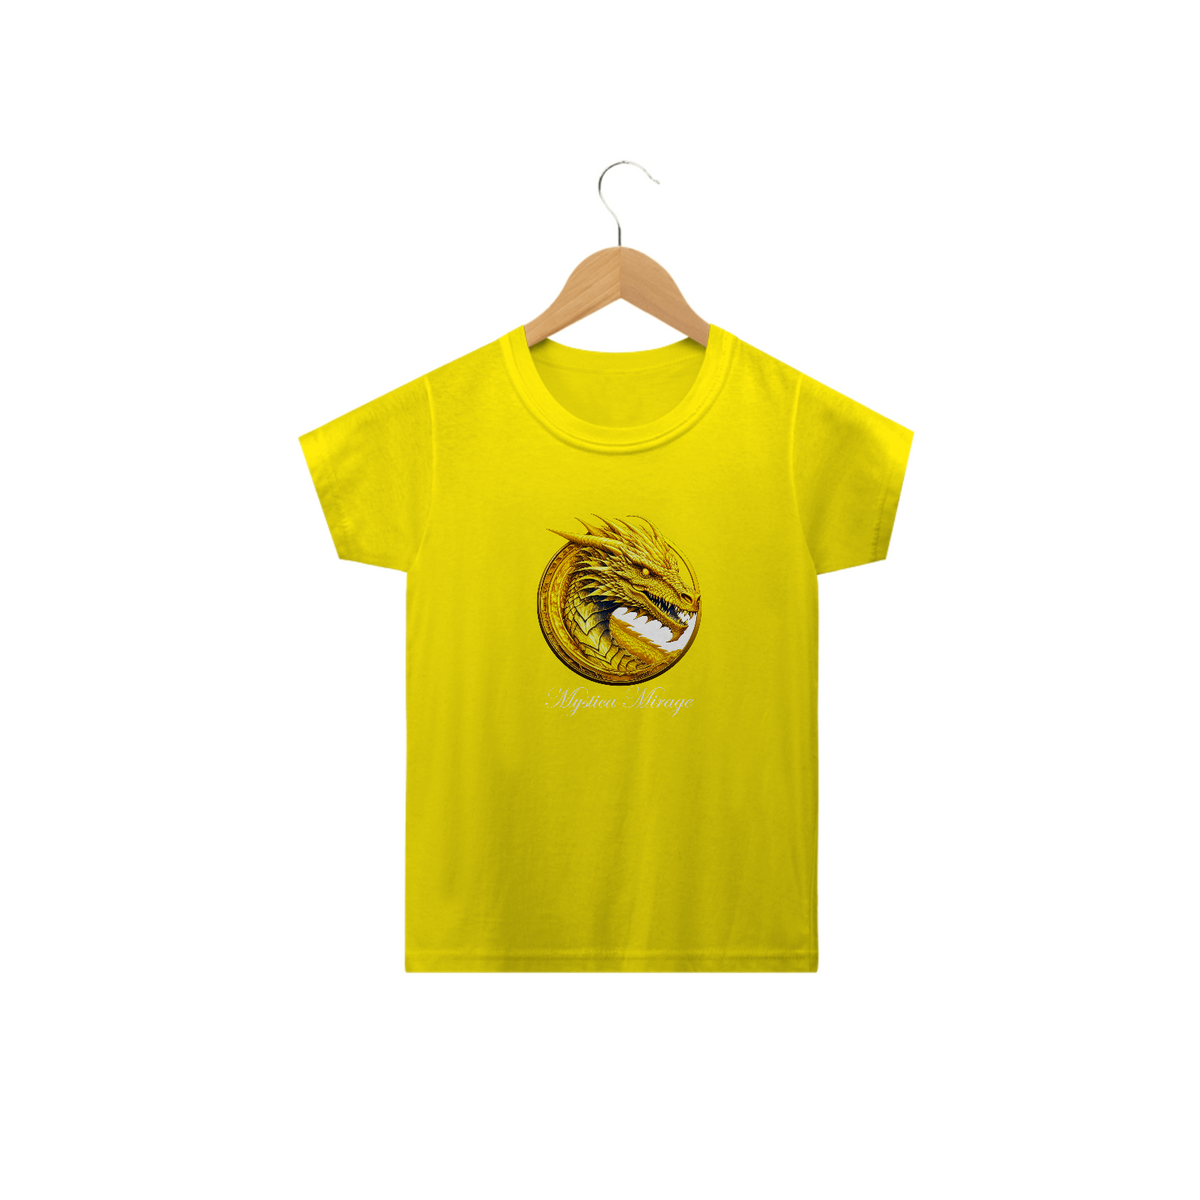 Nome do produto: Camiseta Infantil - Coleção Still Dragon - Mystica Mirage